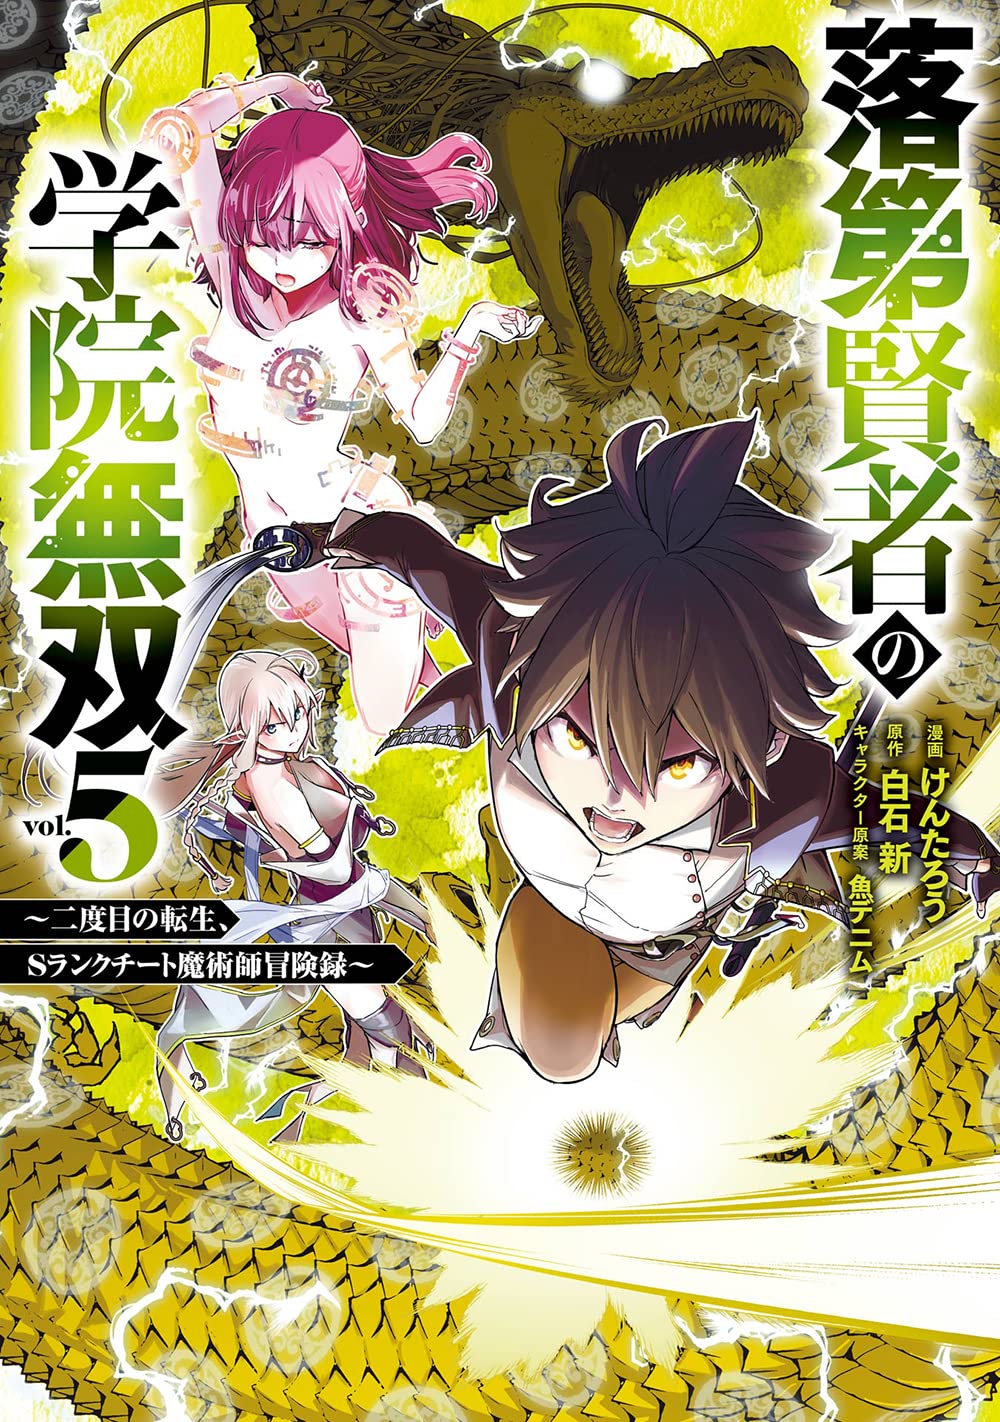 Dai Densetsu no Yuusha no Densetsu (Light Novel) Manga